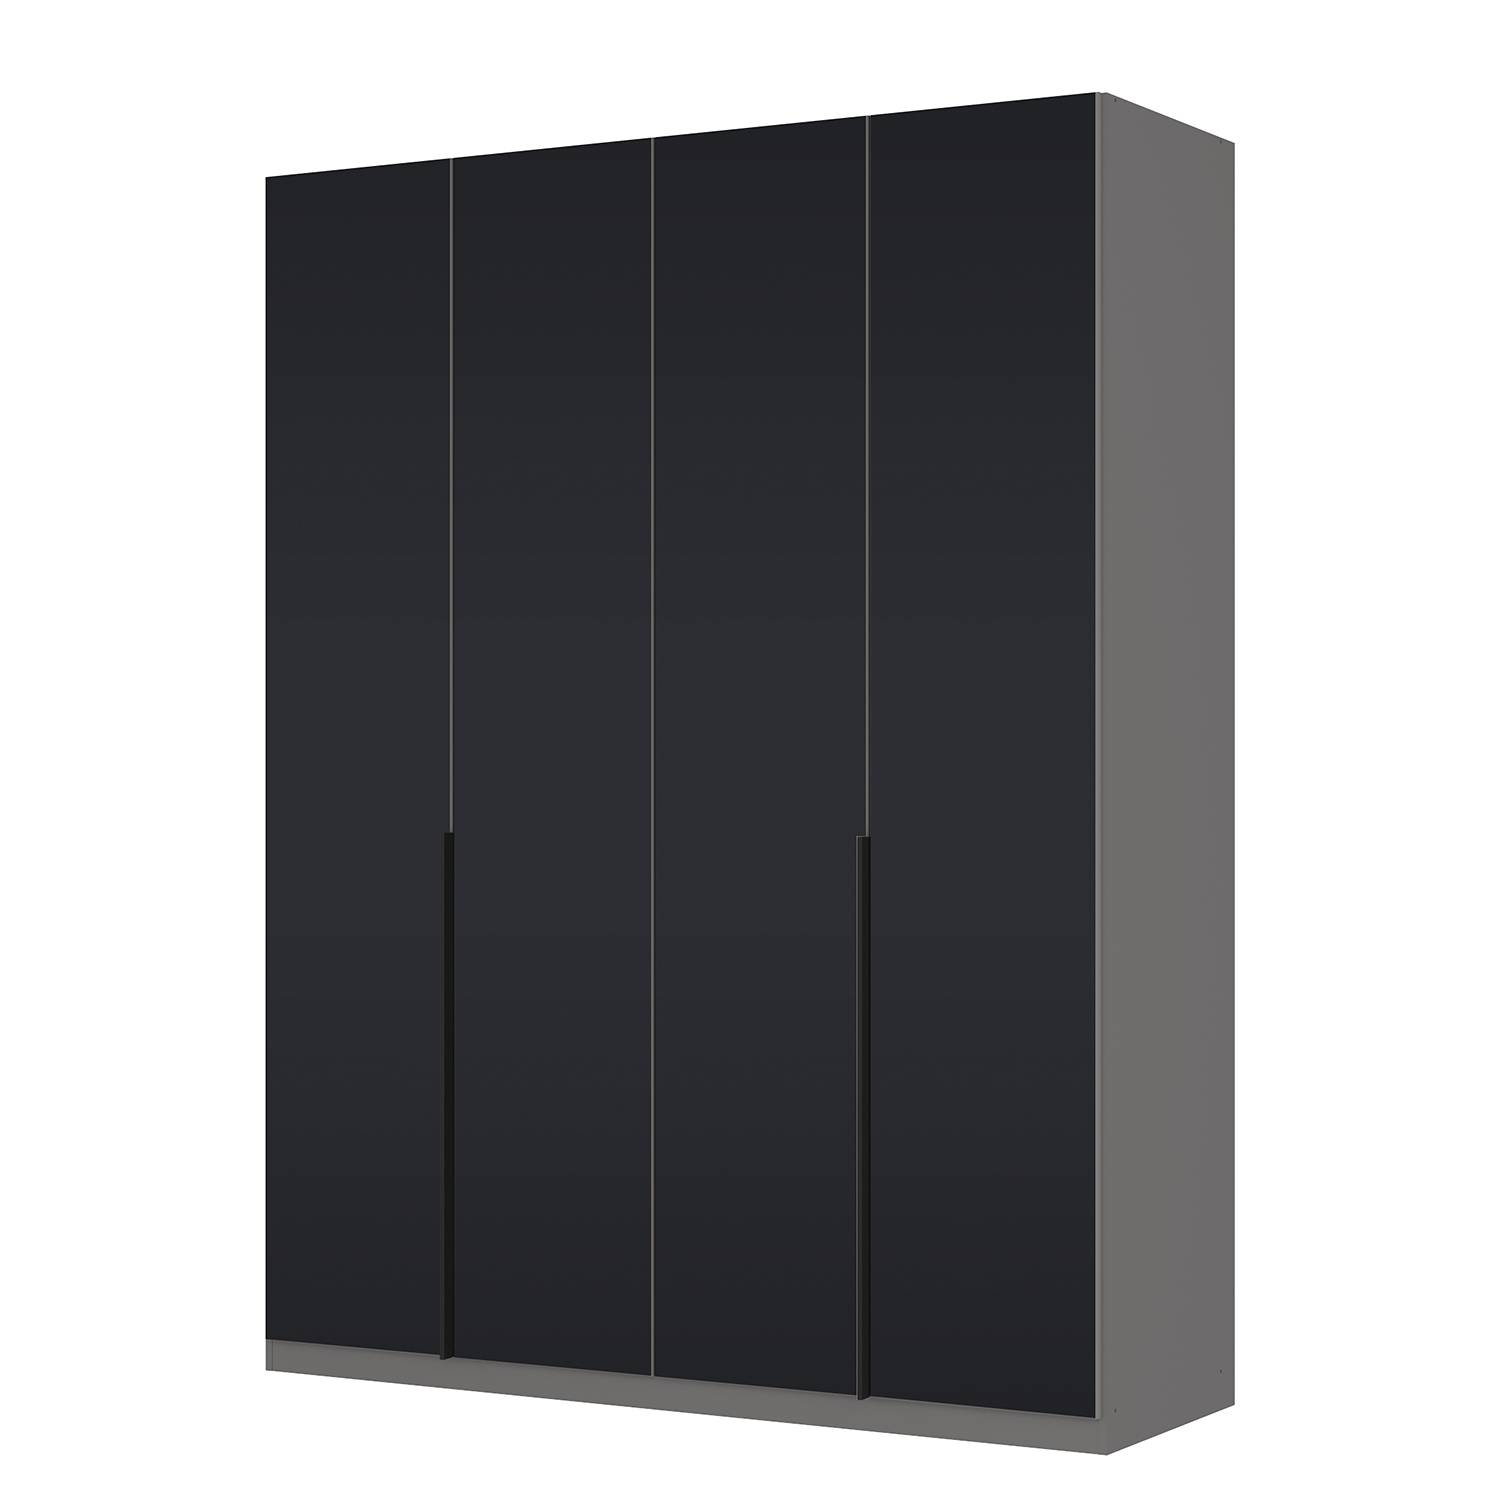 goedkoop Draaideurkast Skøp I grafietkleurig zwart mat glas 181cm 4 deurs 236cm Premium Skop